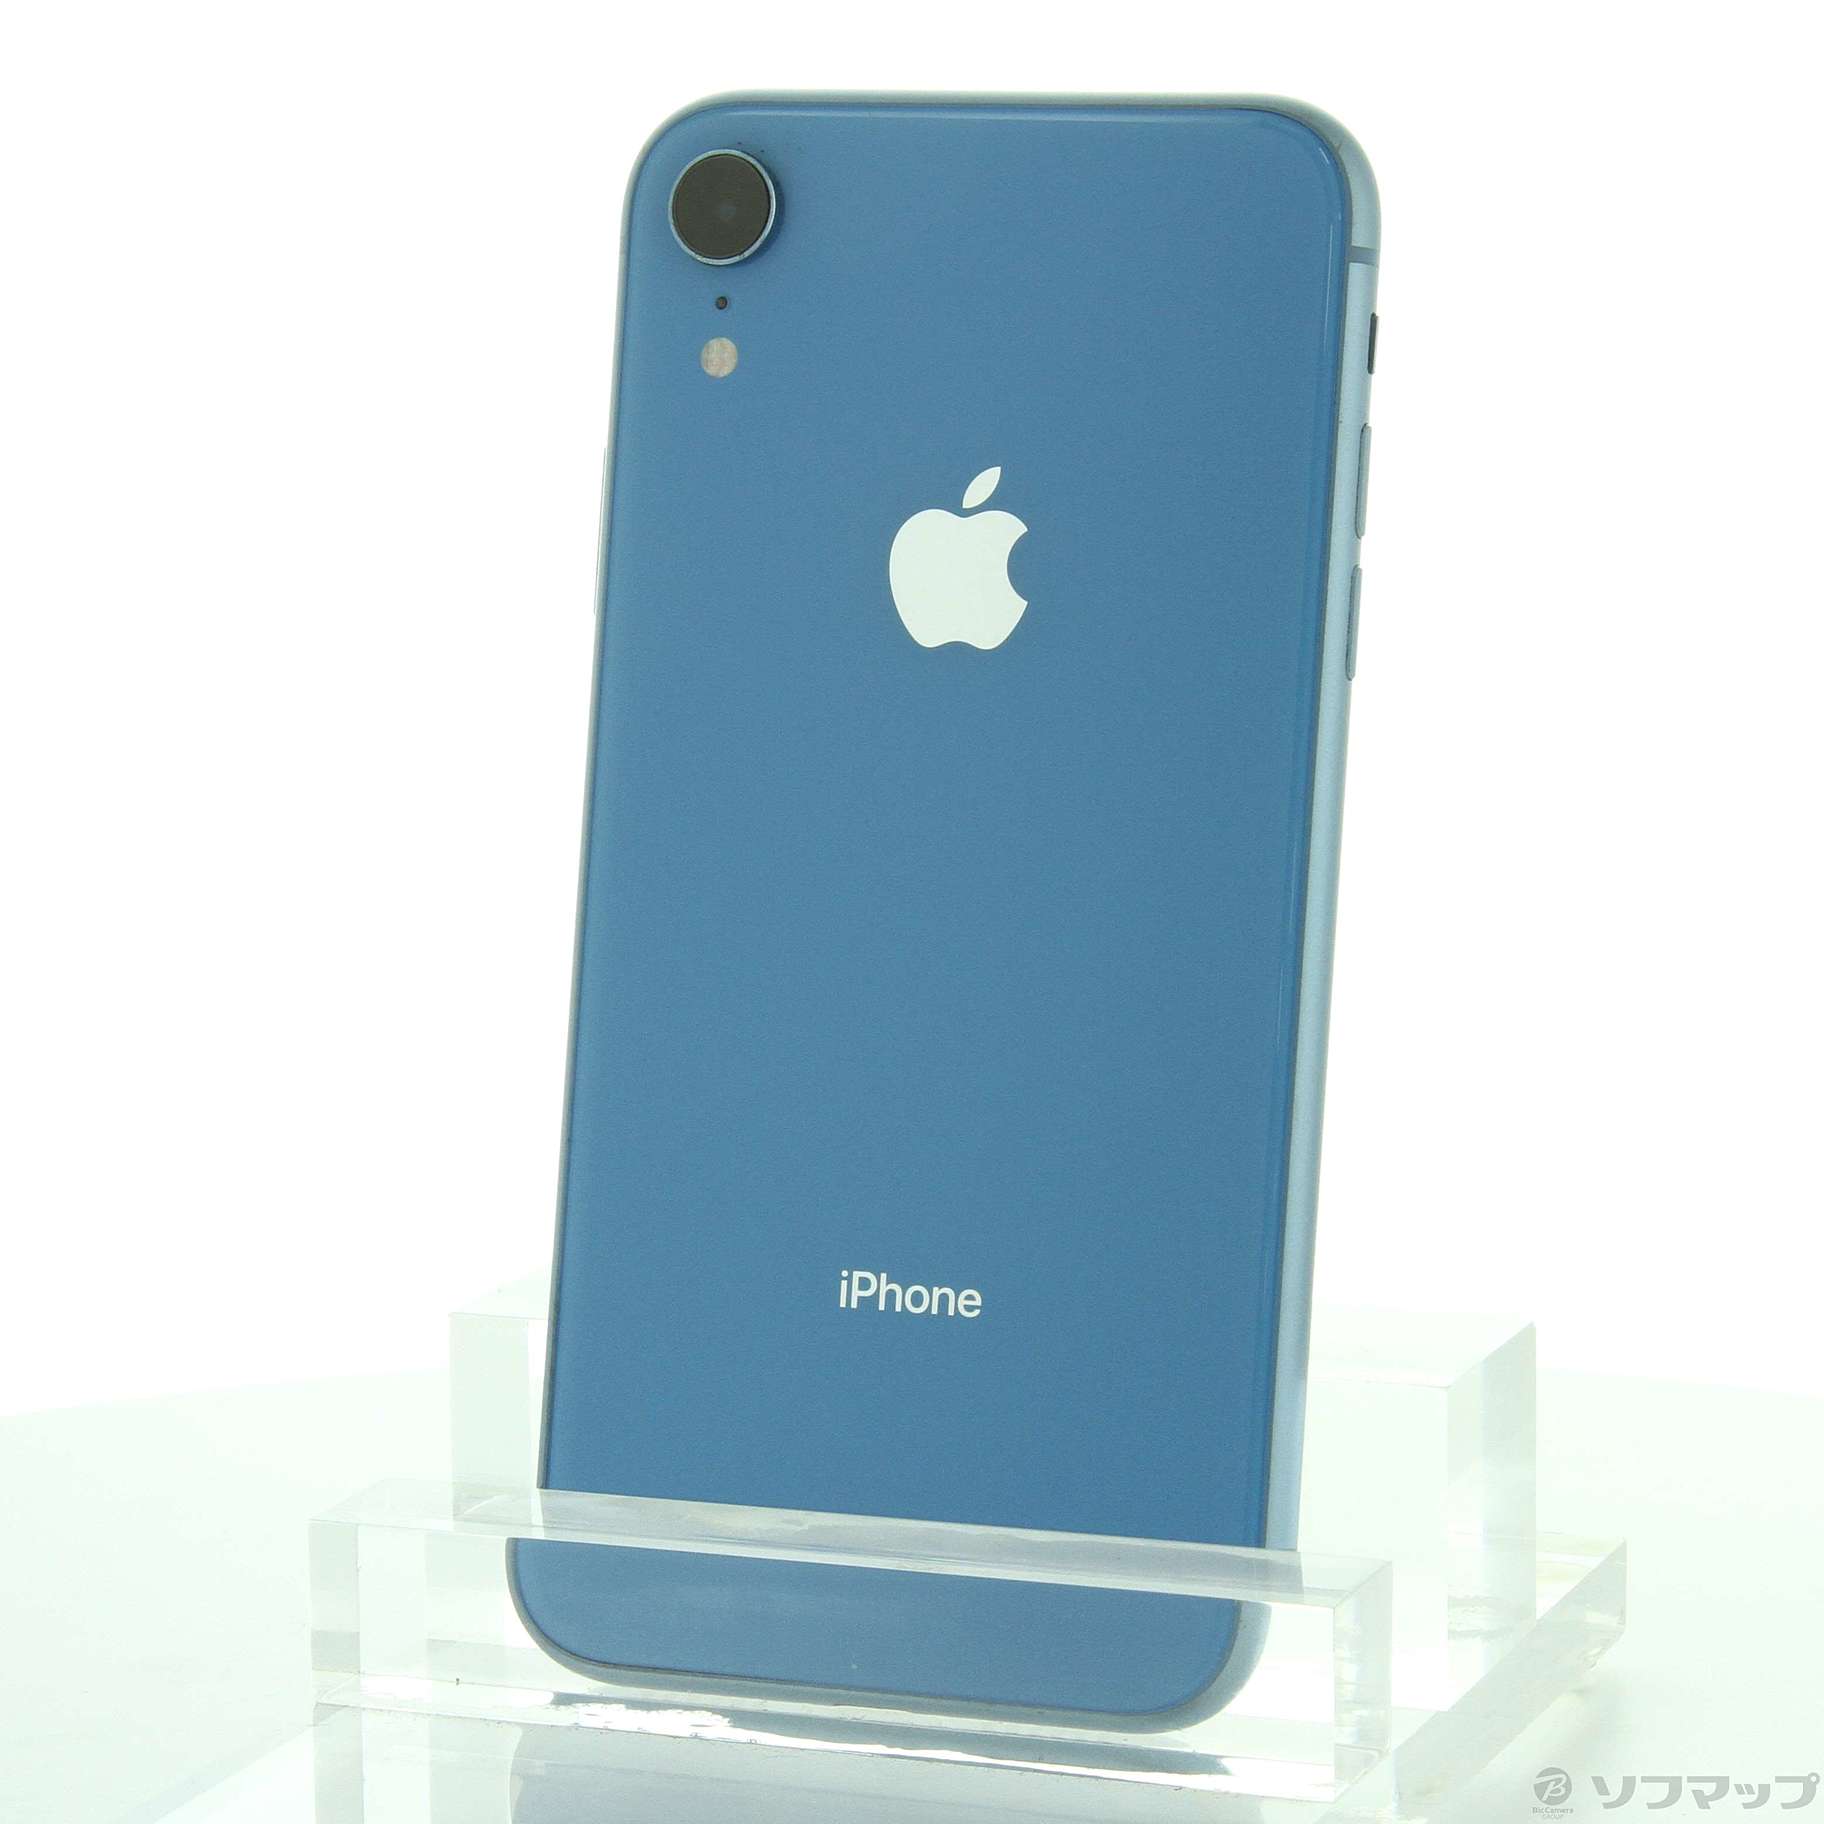 iPhone XR 64GB 青 - www.sorbillomenu.com